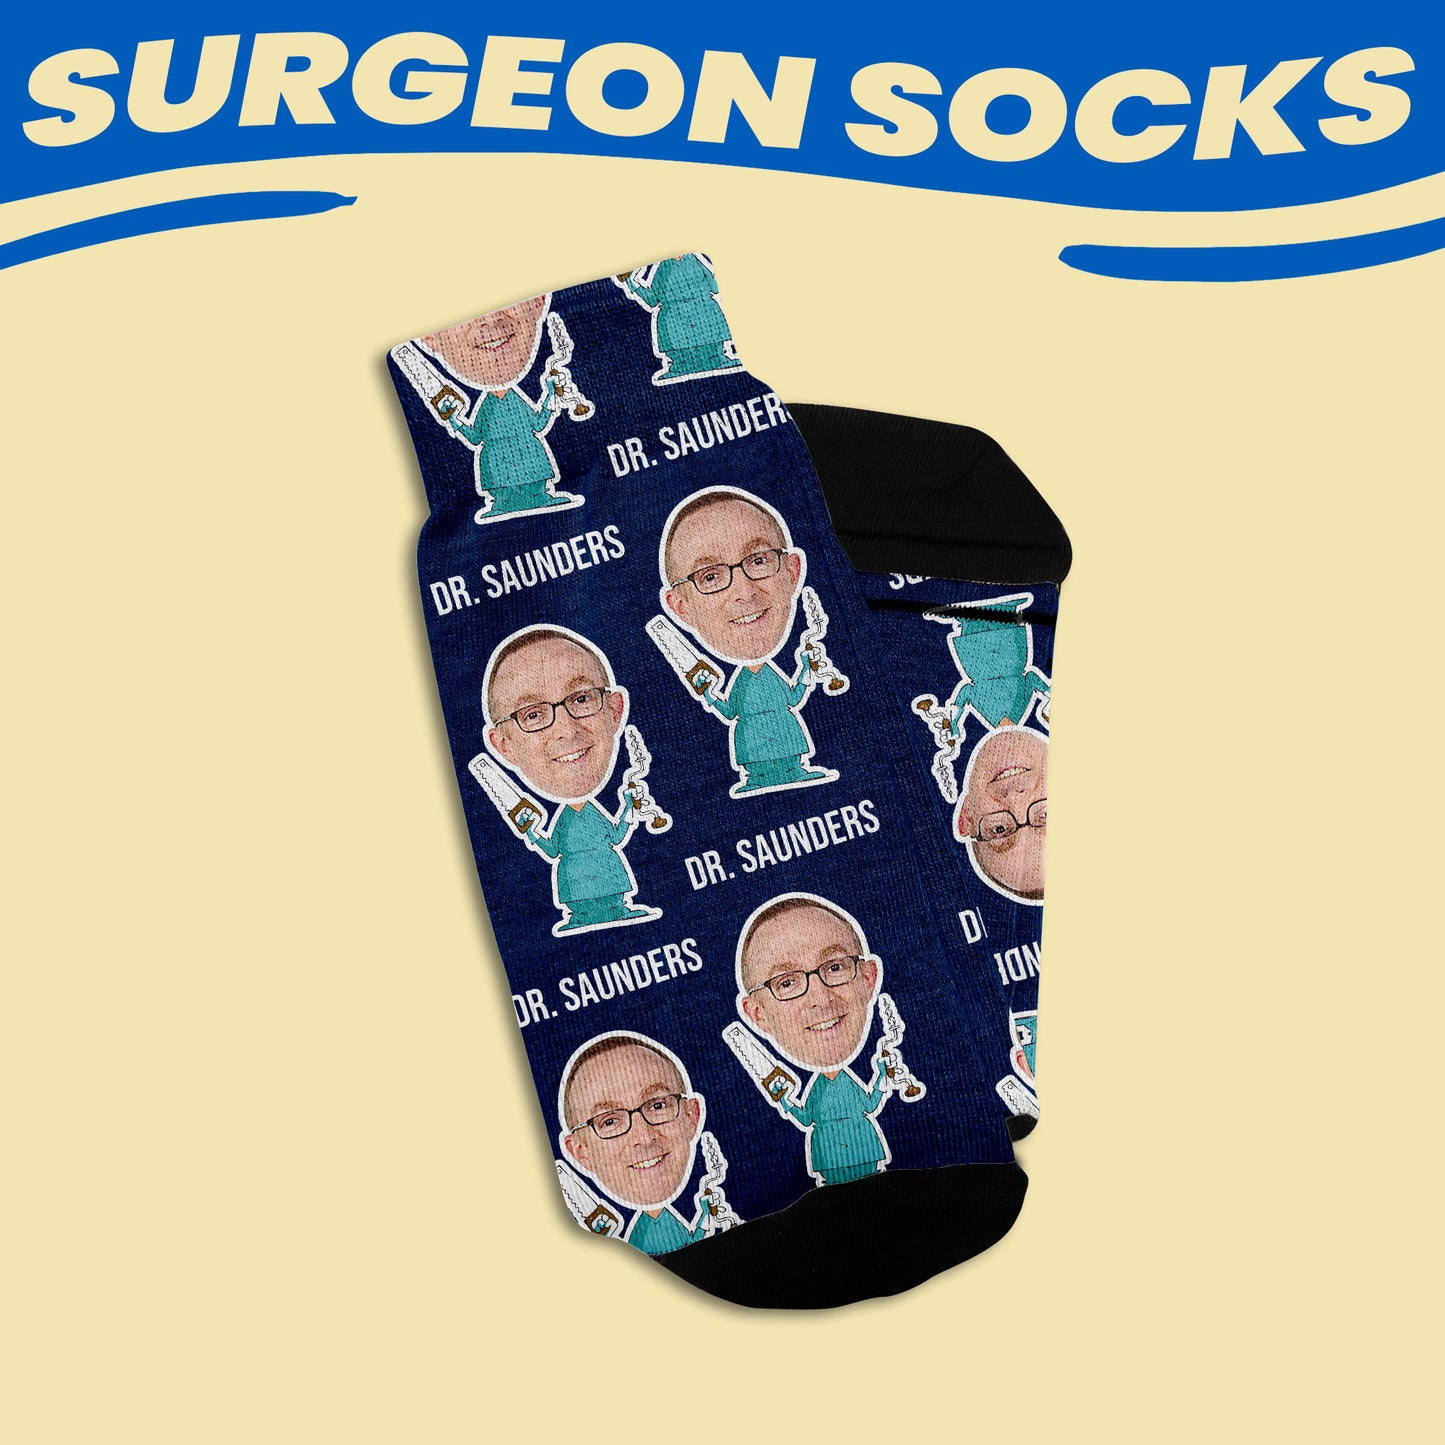 custom socks for surgeons